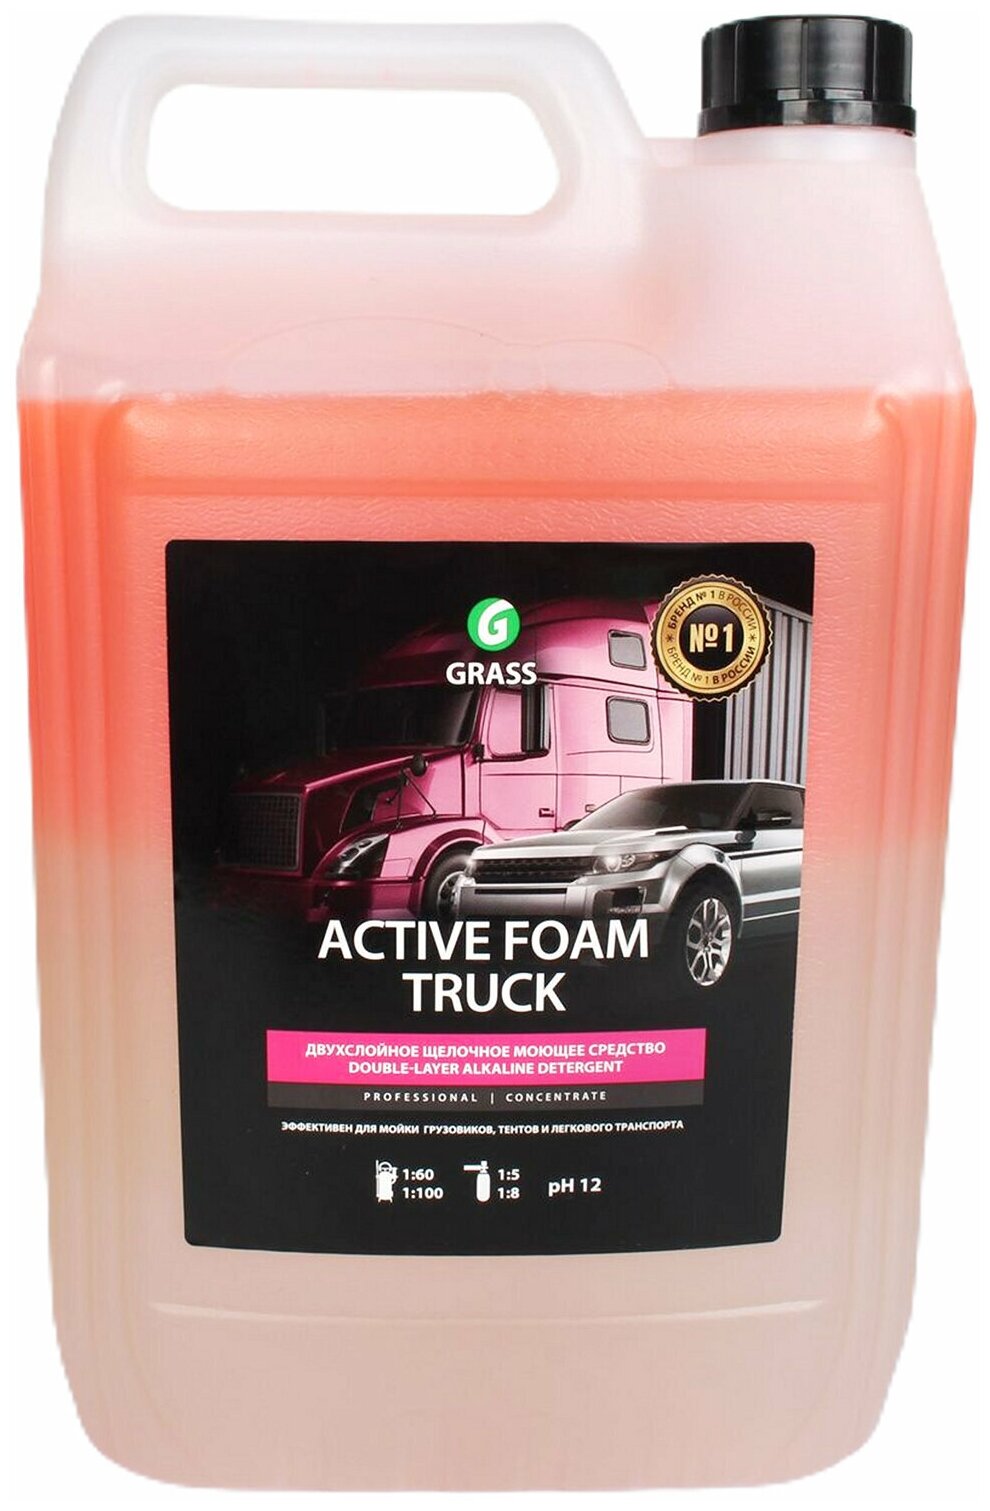  Active Foam Truck    6 GraSS . 113191